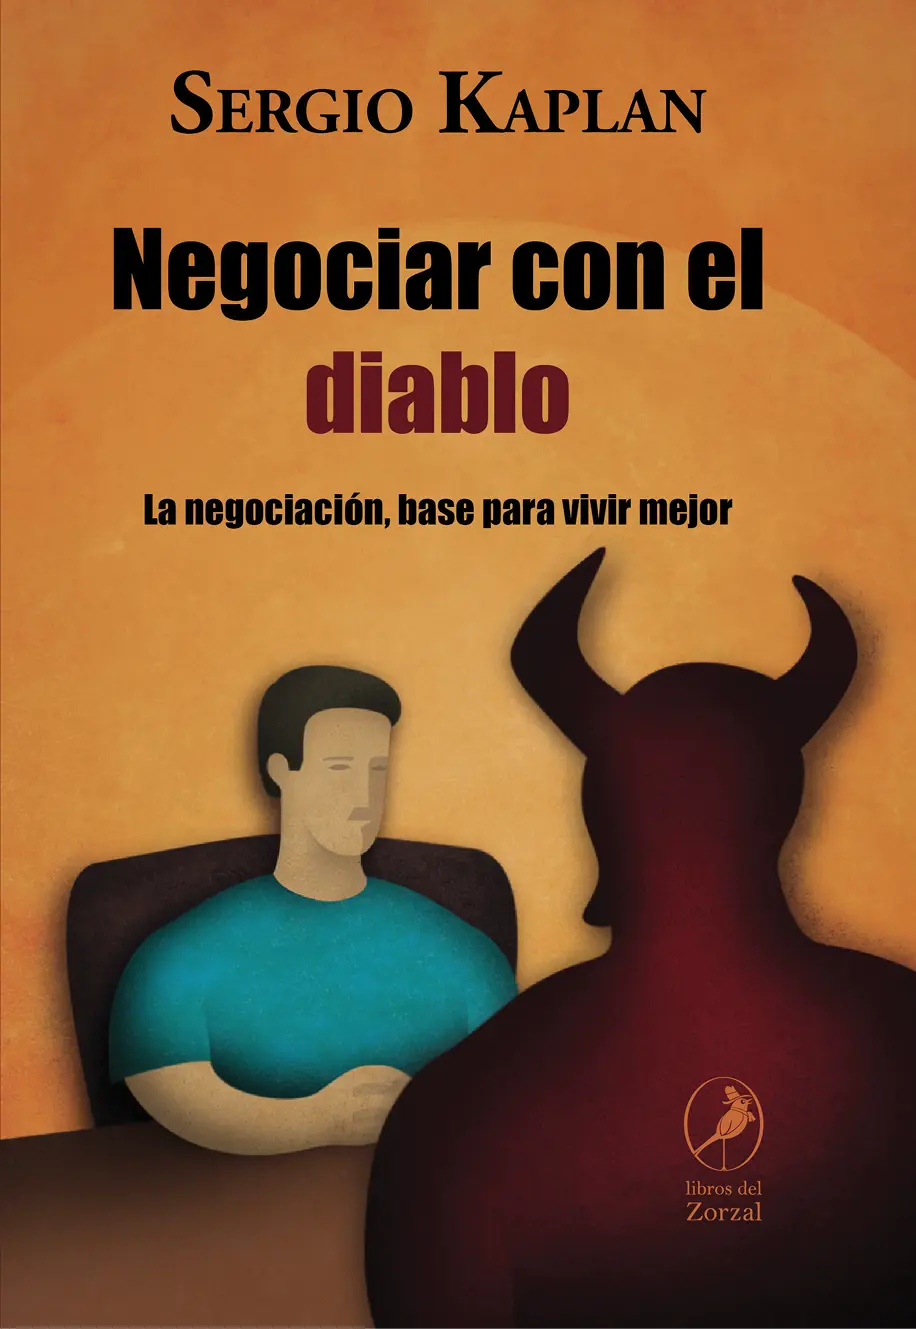 Sergio Kaplan Negociar con el diablo La negociación base para vivir mejor - фото 1